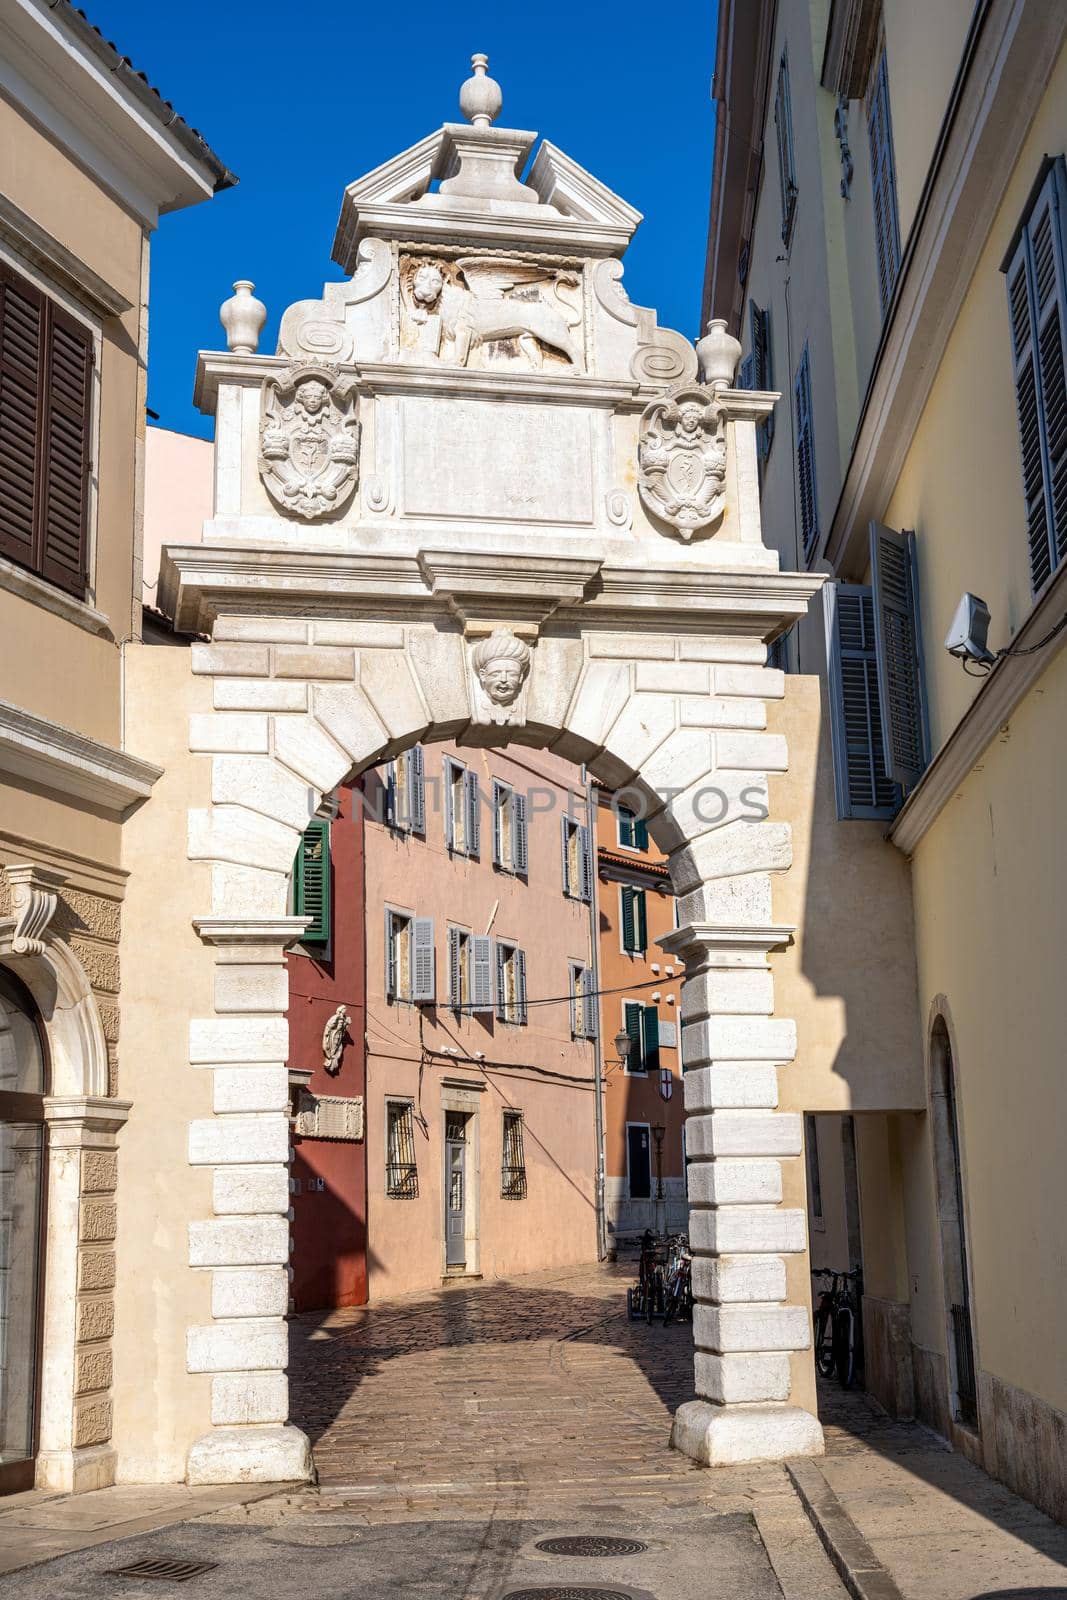 The Porta Balbi in Rovinj, Croatia by elxeneize